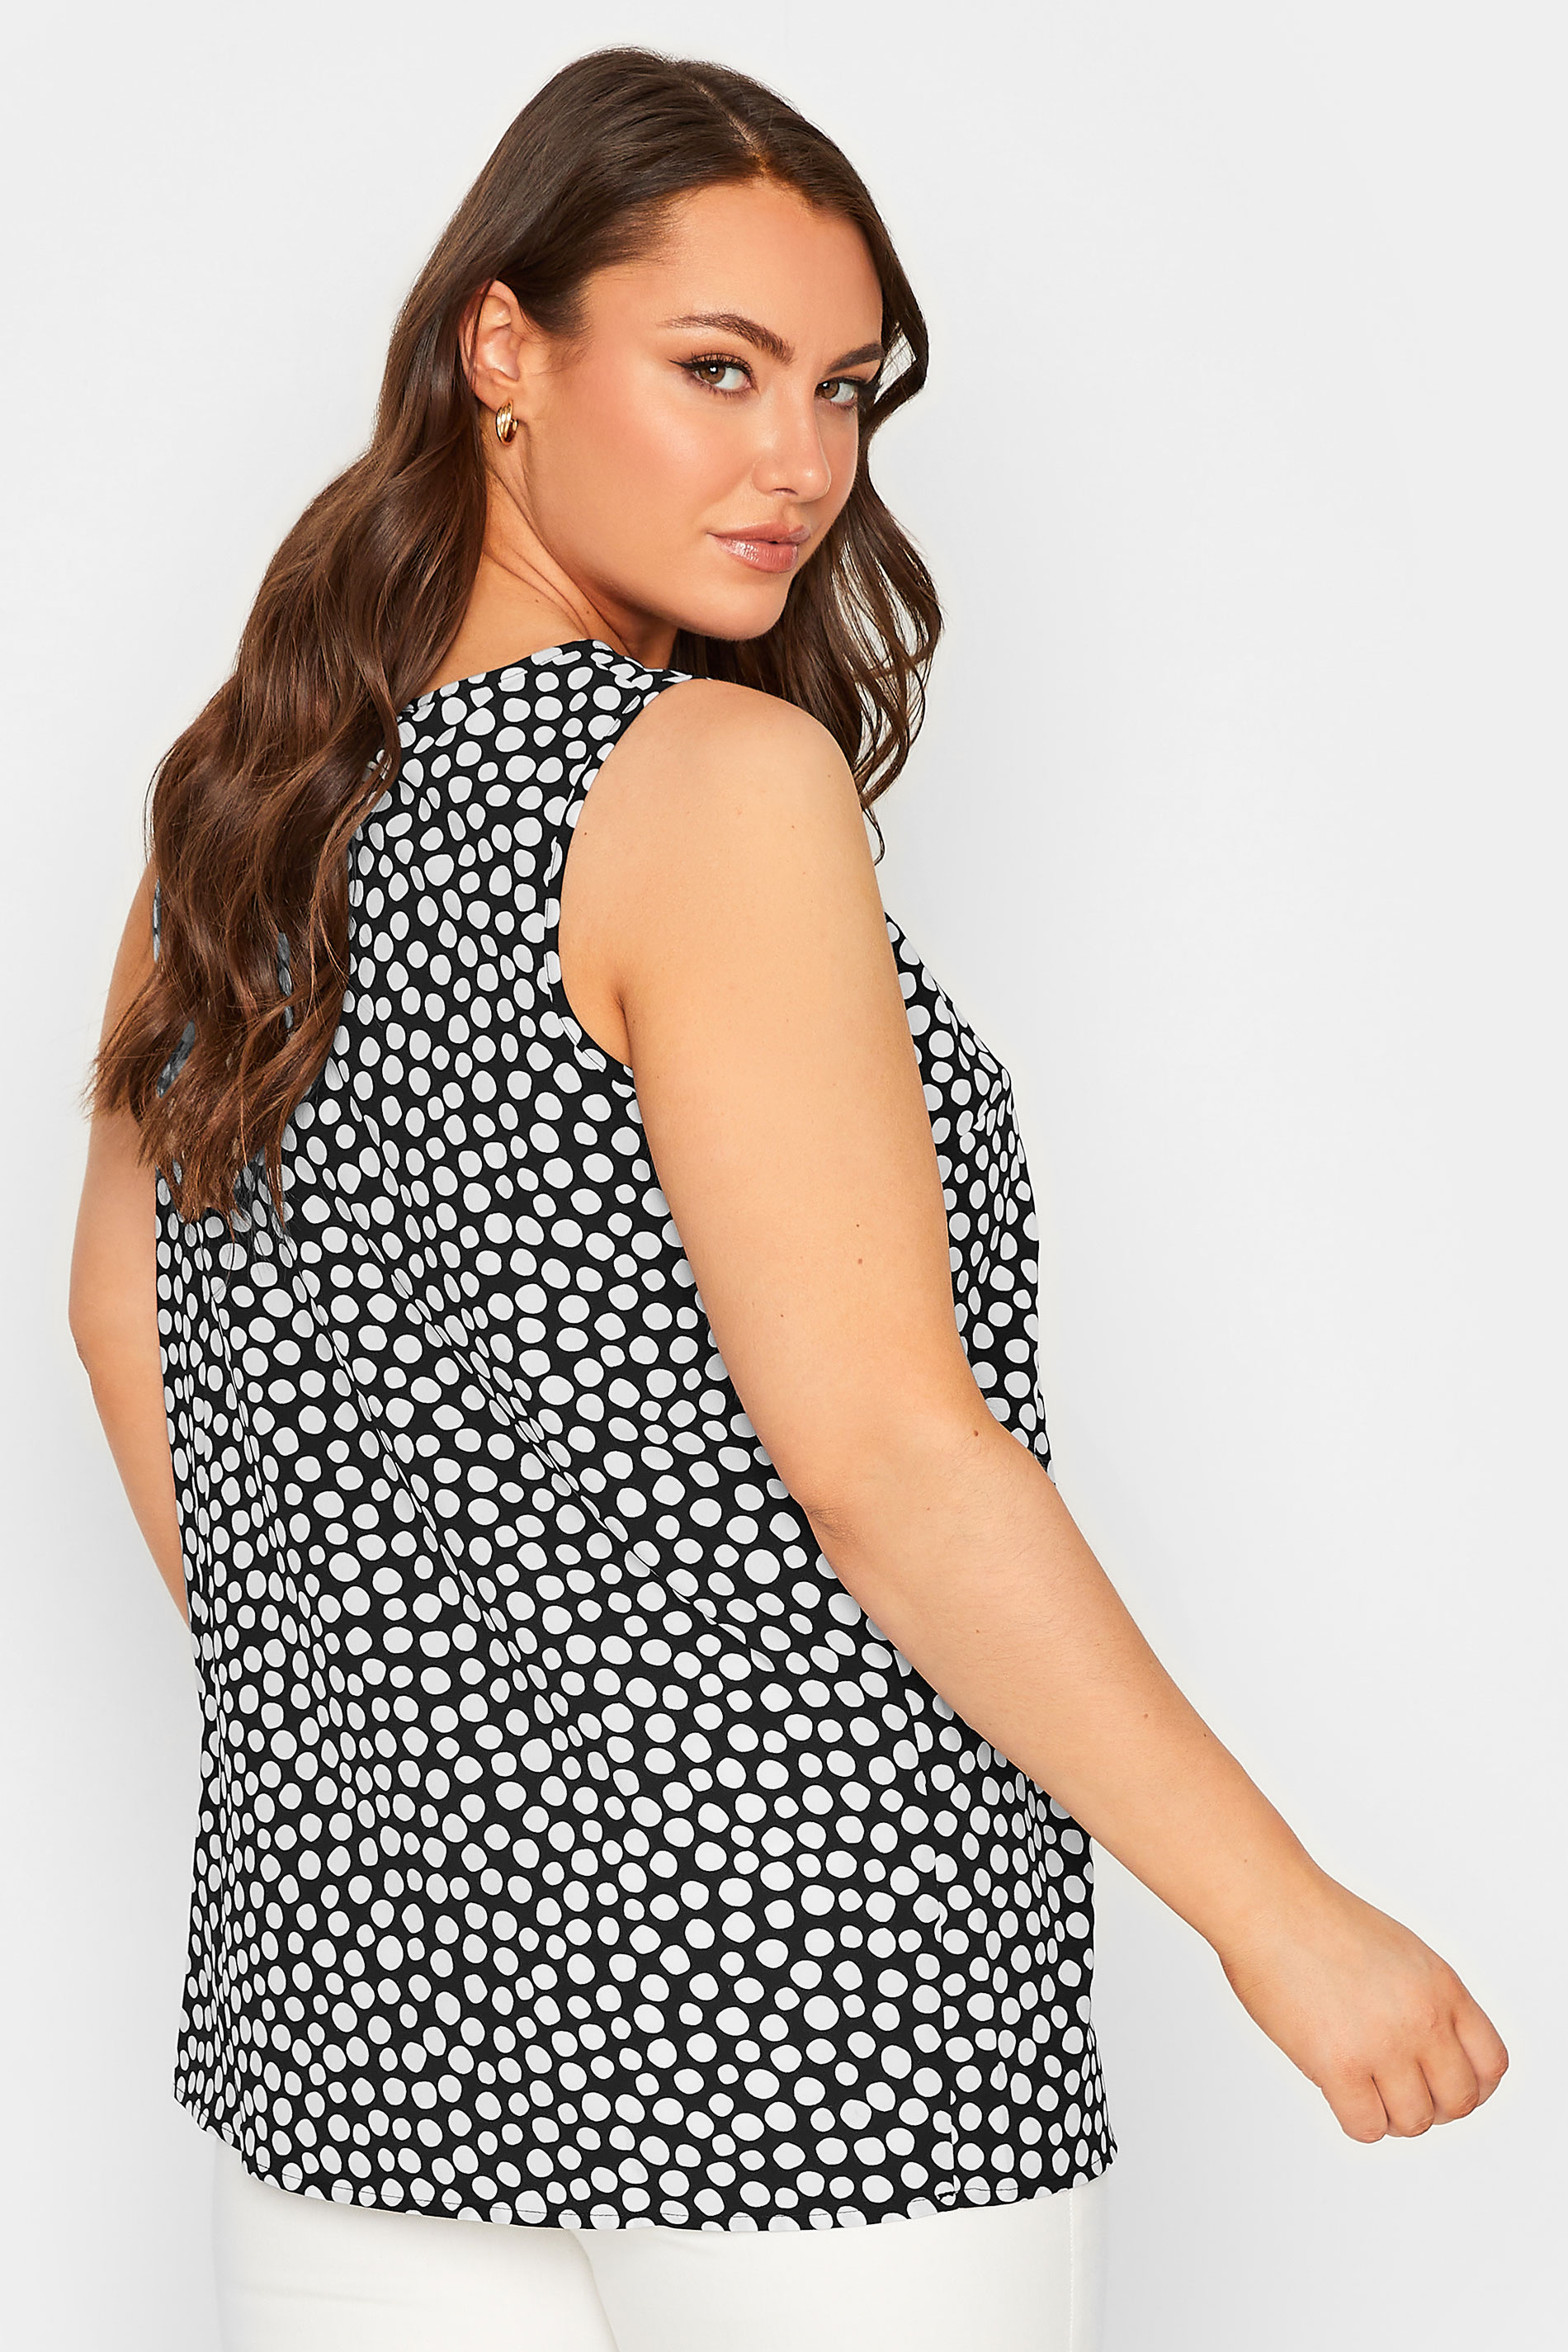 YOURS Curve Plus Size Black Spot Print Cami Vest Top | Yours Clothing  3